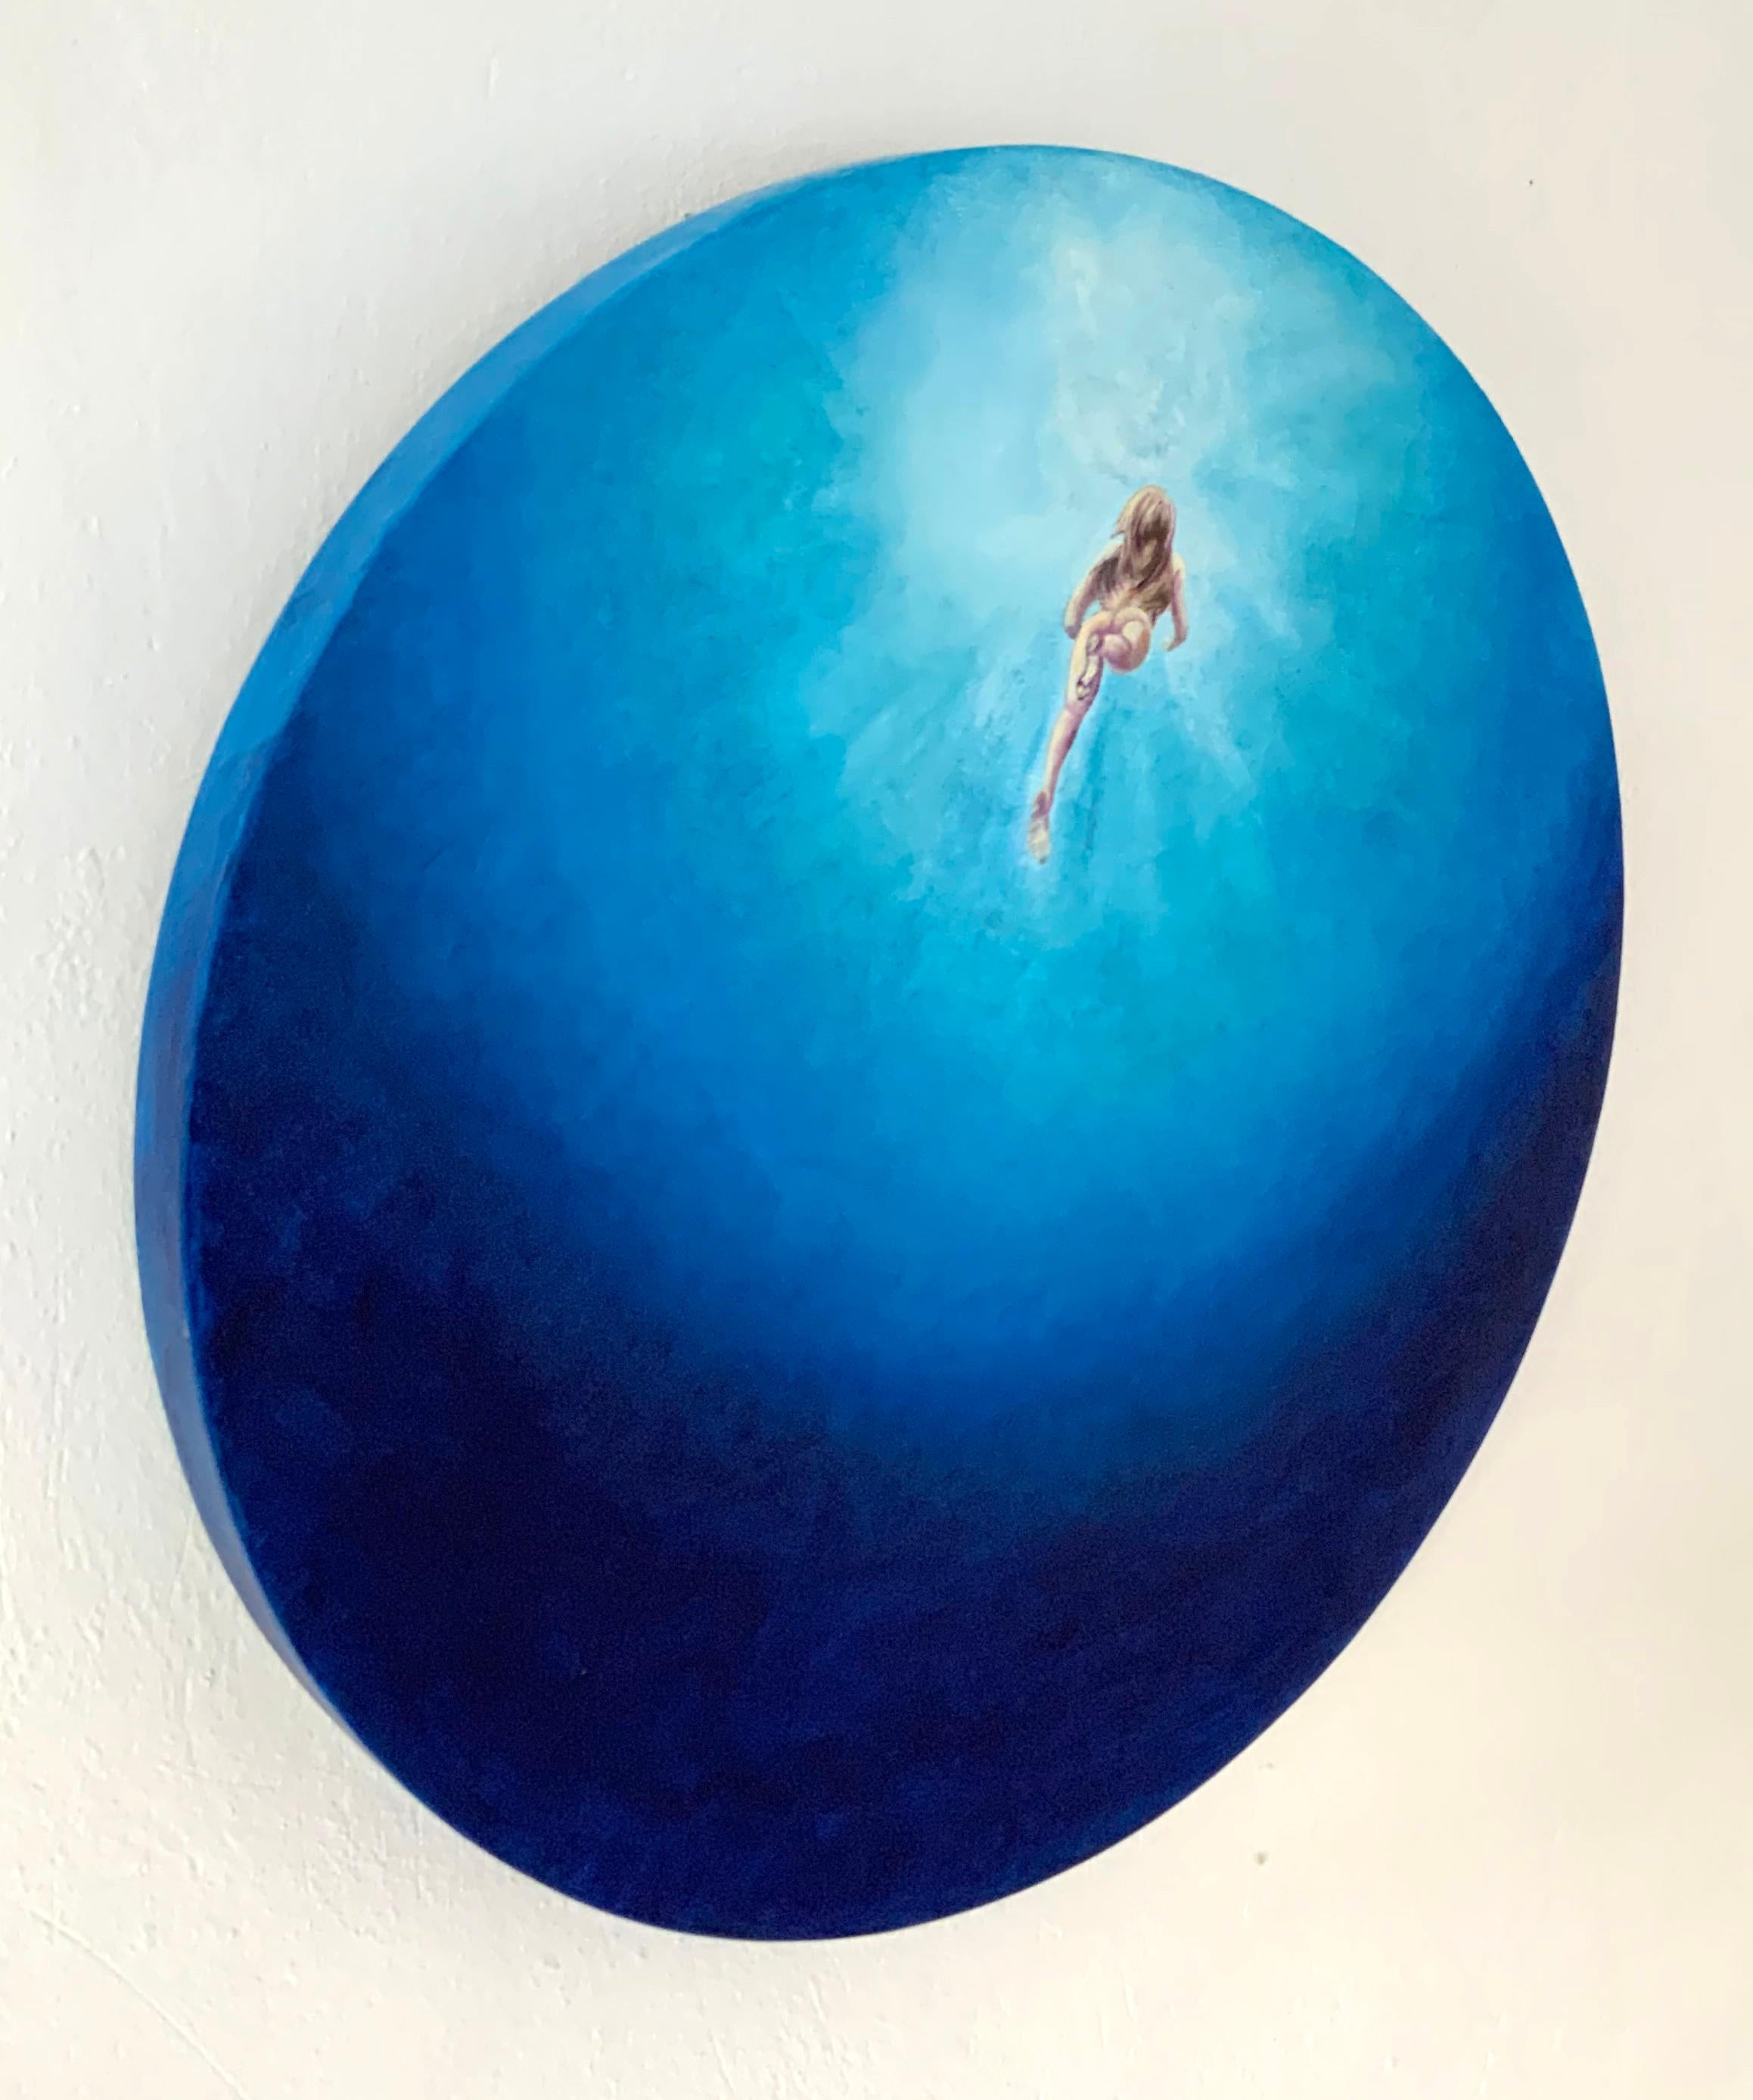 « Bleu velours », tons bleus vifs, peinture circulaire d'eau de mer avec nageoir nu - Contemporain Painting par Anastasia Gklava